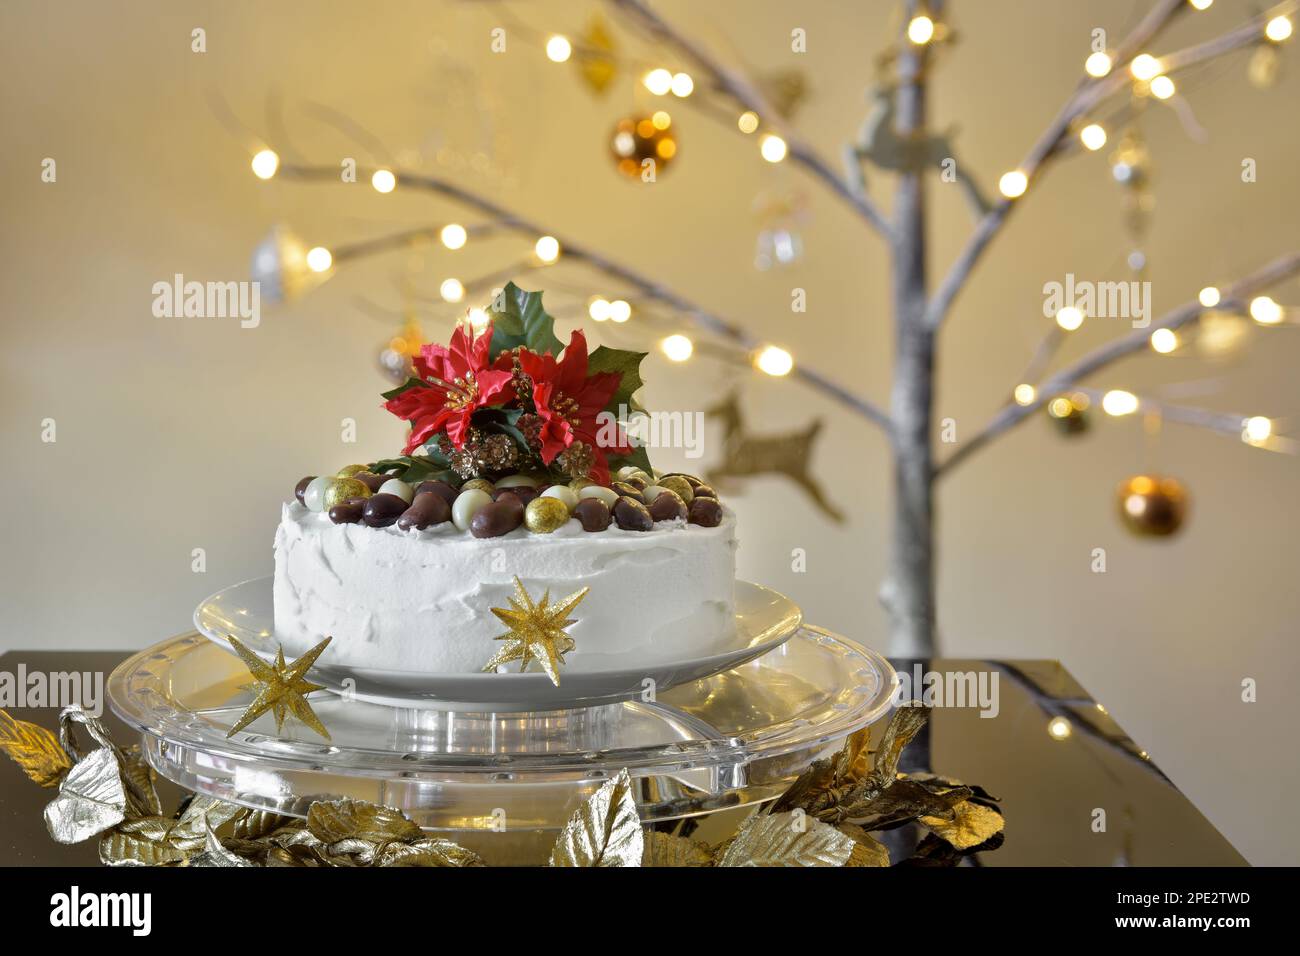 Gâteau de Noël glacé avec noix de chocolat sur le dessus du support à gâteau transparent avec une branche lumineuse arbre de Noël dans le fond Banque D'Images